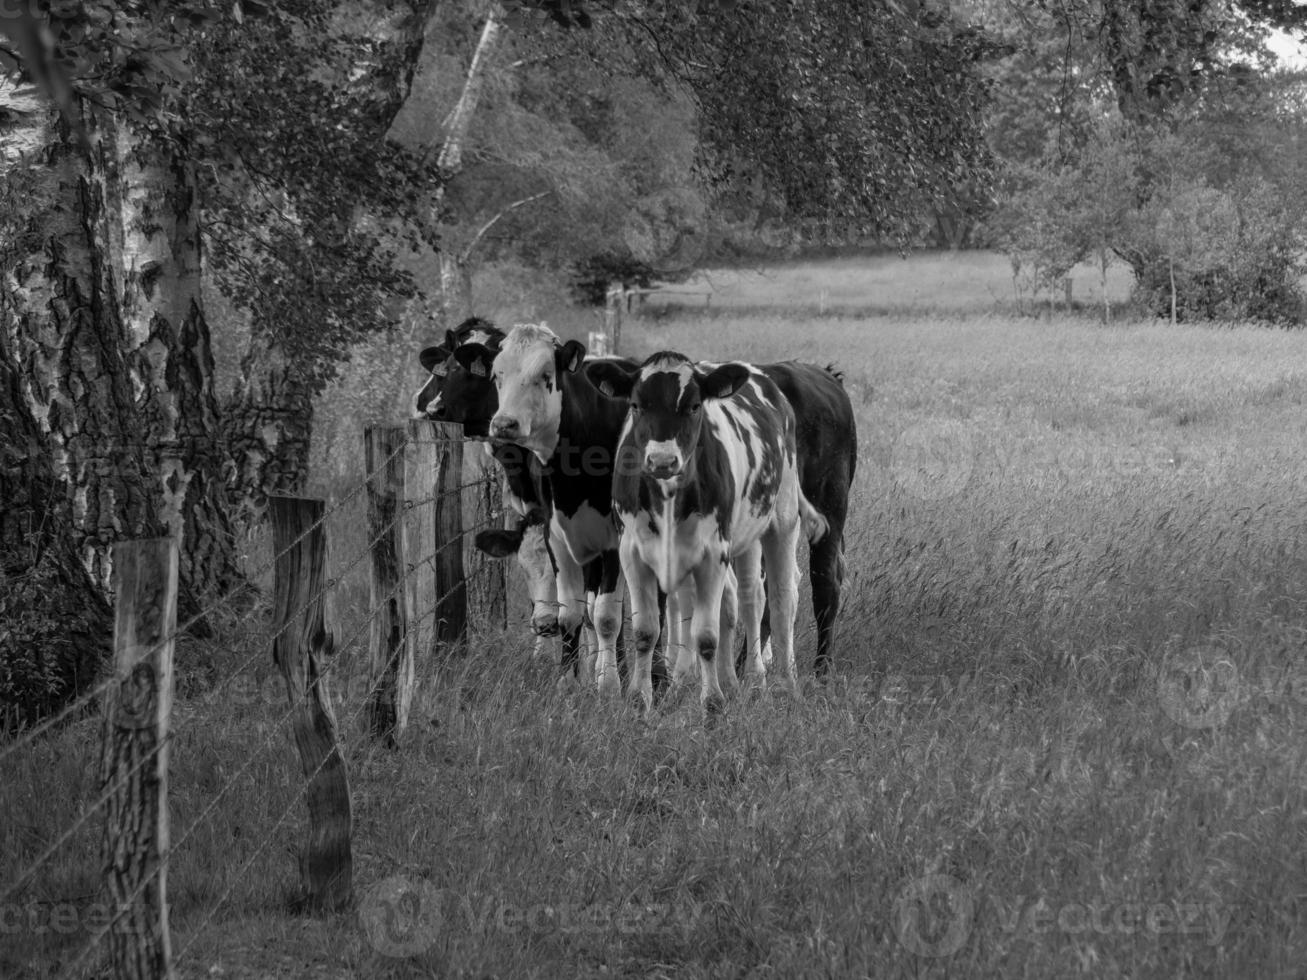 vacas en el muensterland alemán foto